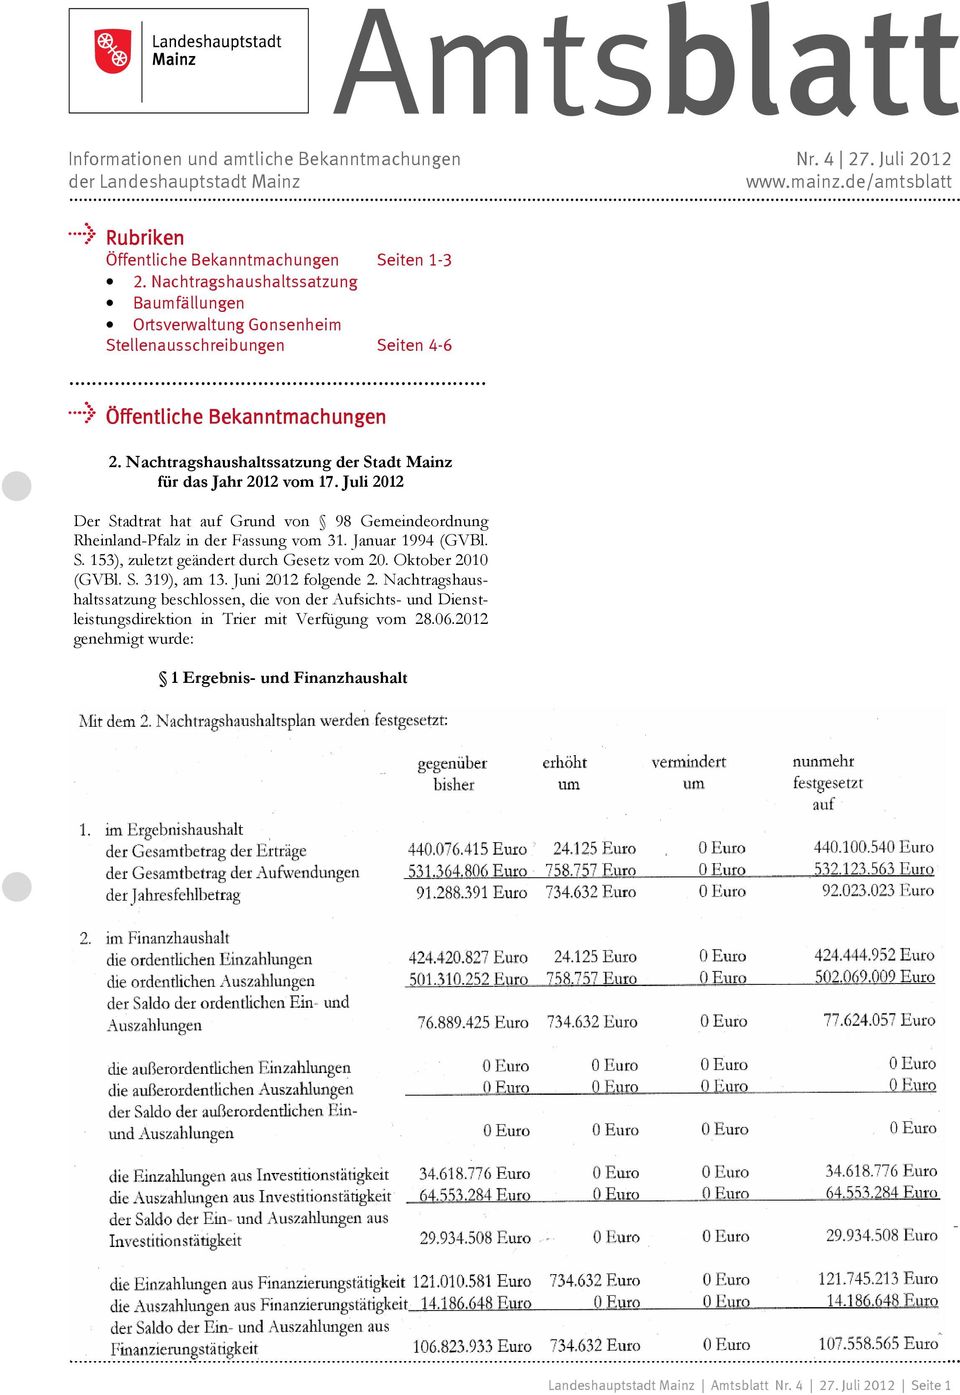 Nachtragshaushaltssatzung der Stadt Mainz für das Jahr 2012 vom 17. Juli 2012 Der Stadtrat hat auf Grund von 98 Gemeindeordnung Rheinland-Pfalz in der Fassung vom 31. Januar 1994 (GVBl. S. 153), zuletzt geändert durch Gesetz vom 20.